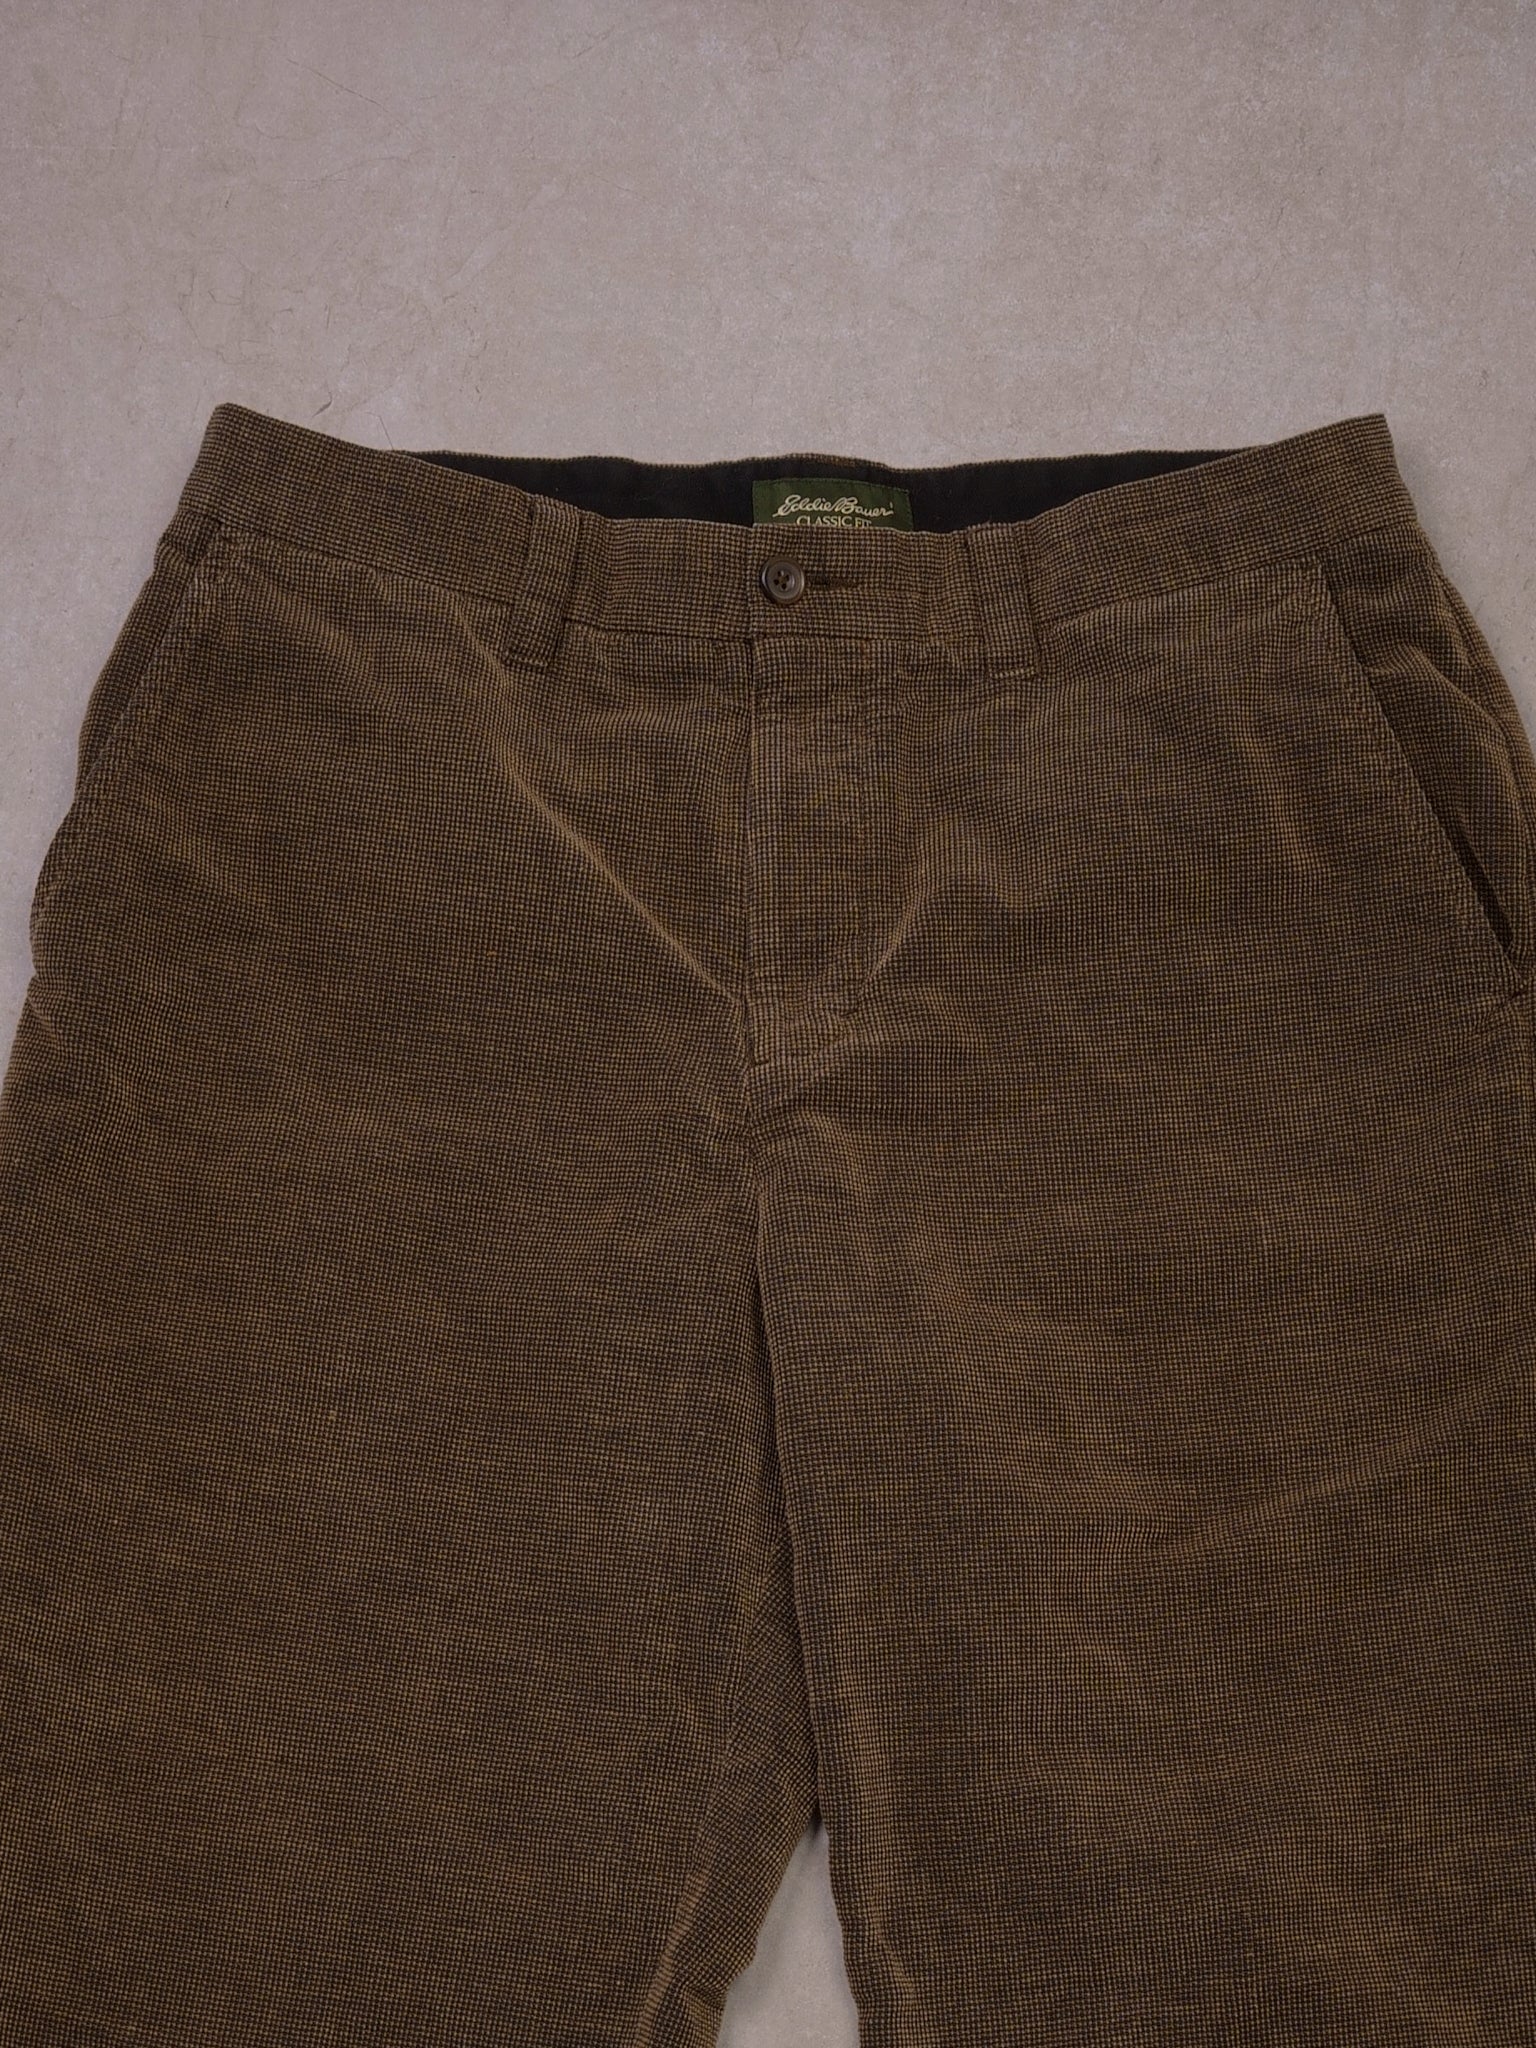 Vintage Brown Eddie Bauer Wool Classic Fit Pants (32x28)